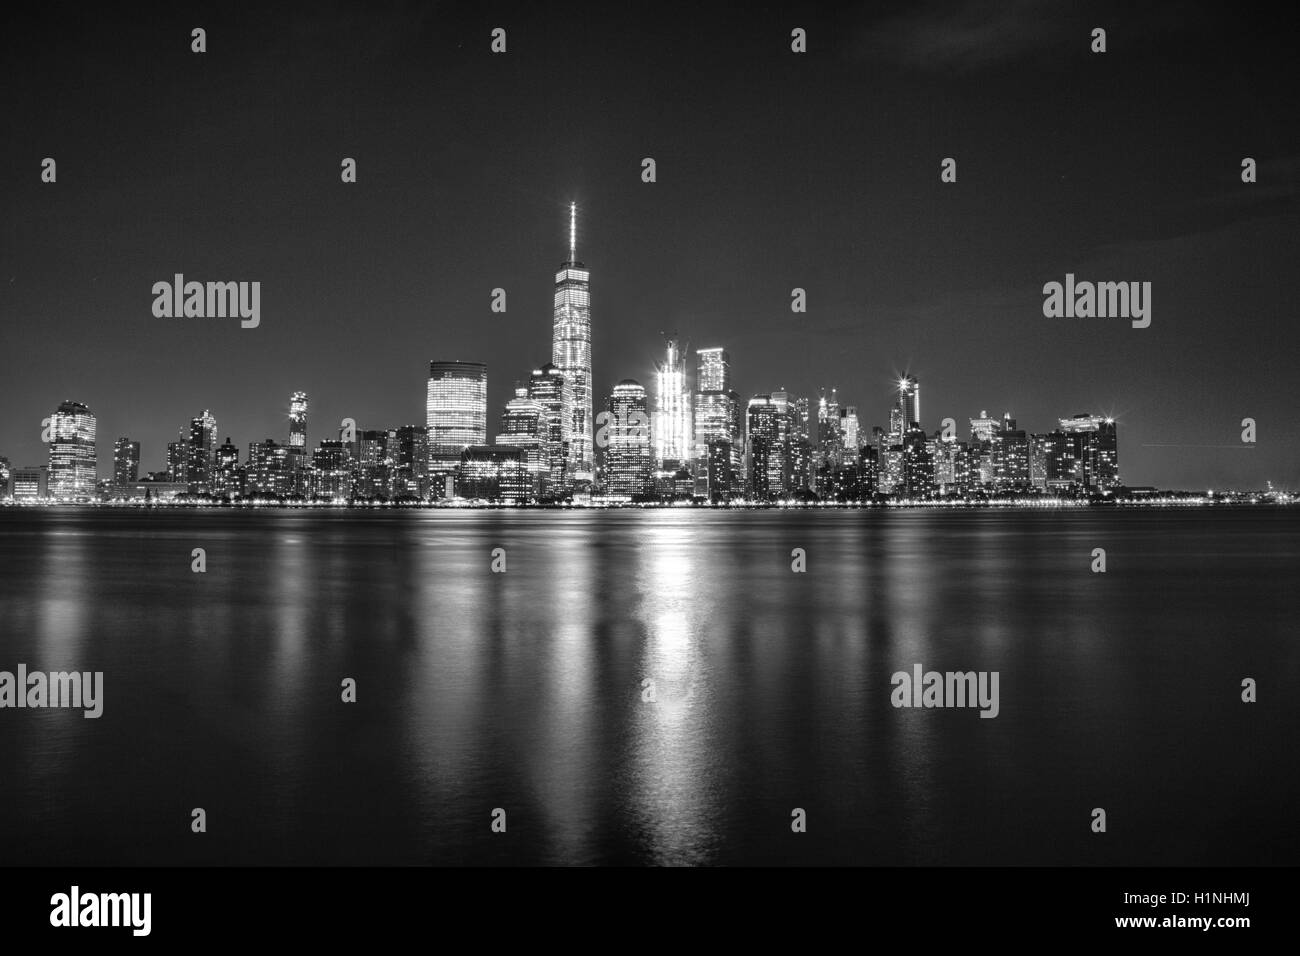 La città di New York, New York, Stati Uniti d'America, 12 agosto 2016: il distretto finanziario sullo skyline di New York City come visto da di Jersey City, NJ. Foto Stock